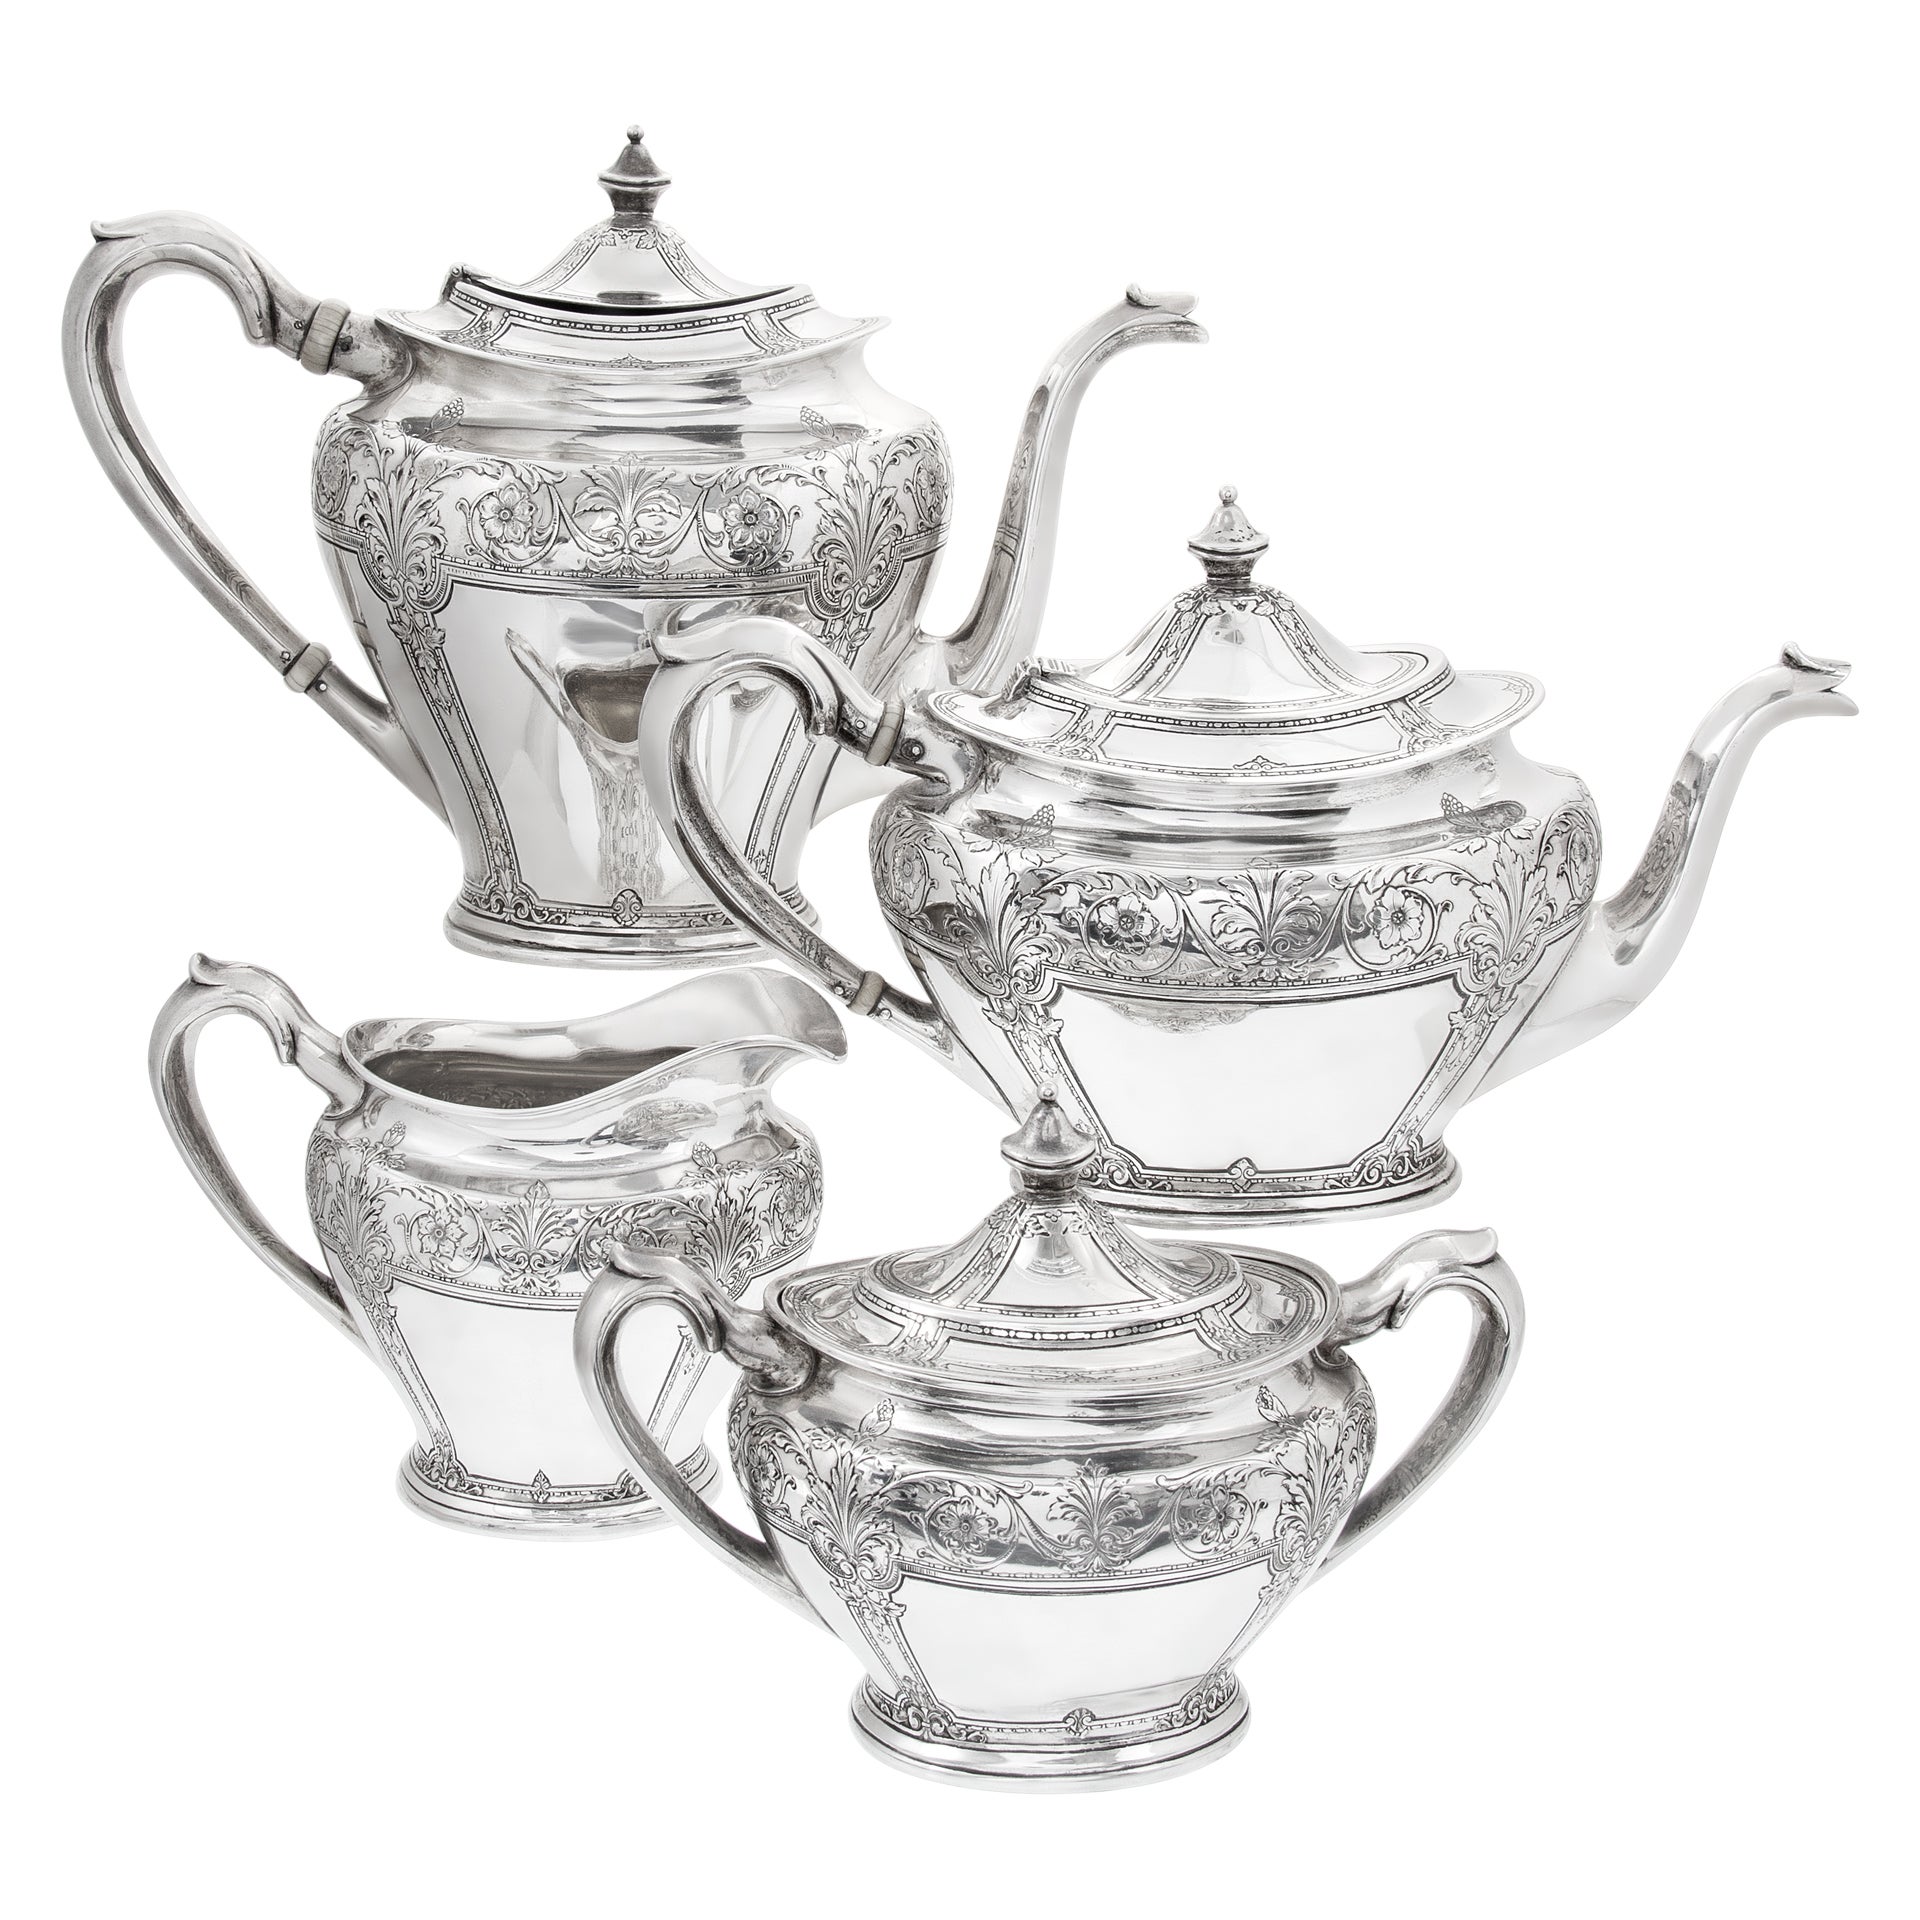 Viktorianisches 4-teiliges Tee-/Kaffee-Set aus Sterlingsilber, von Lebkuecher & Co